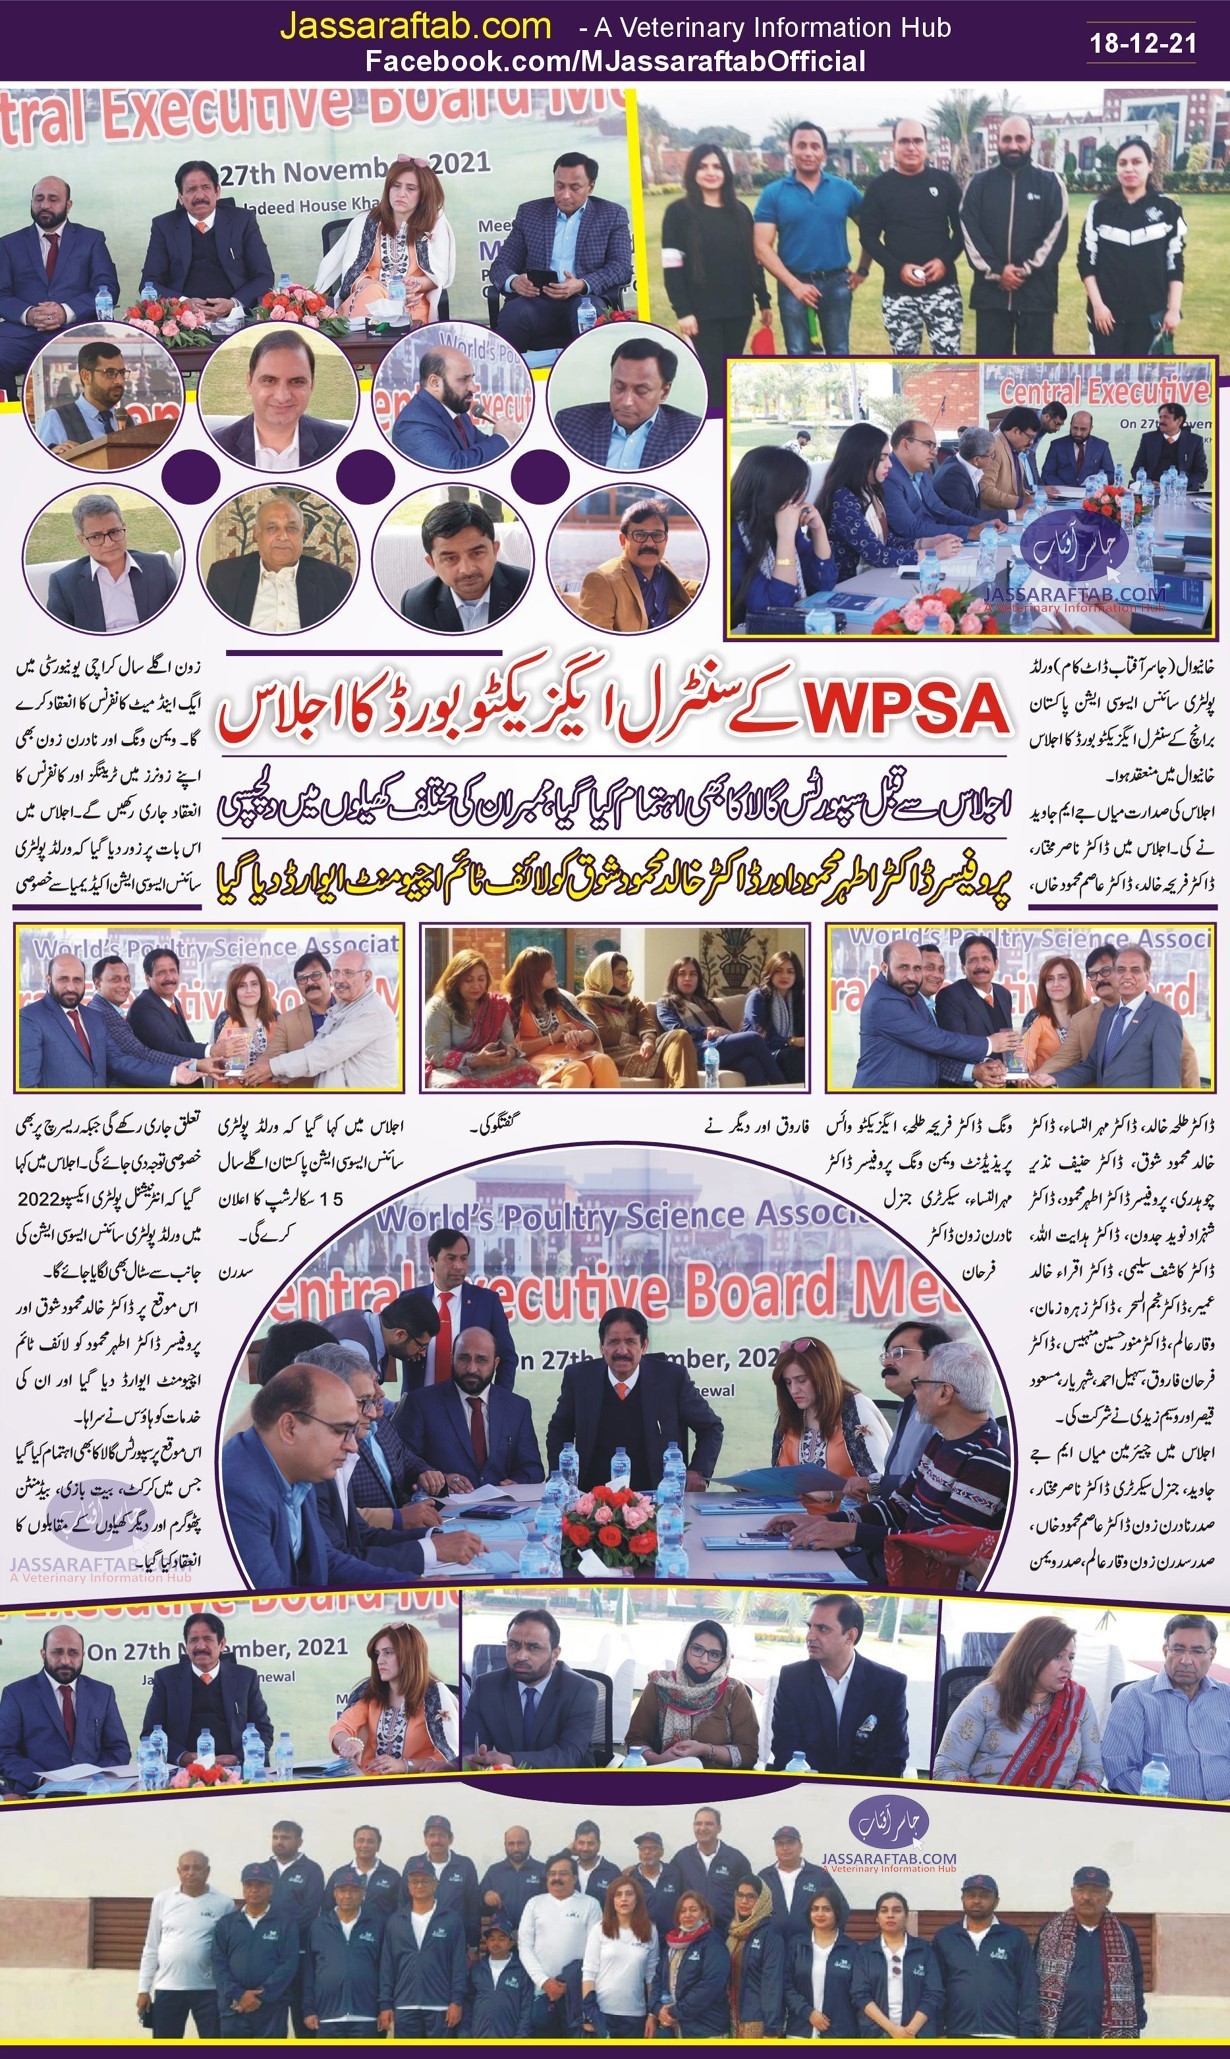 WPSA Central Executive Board